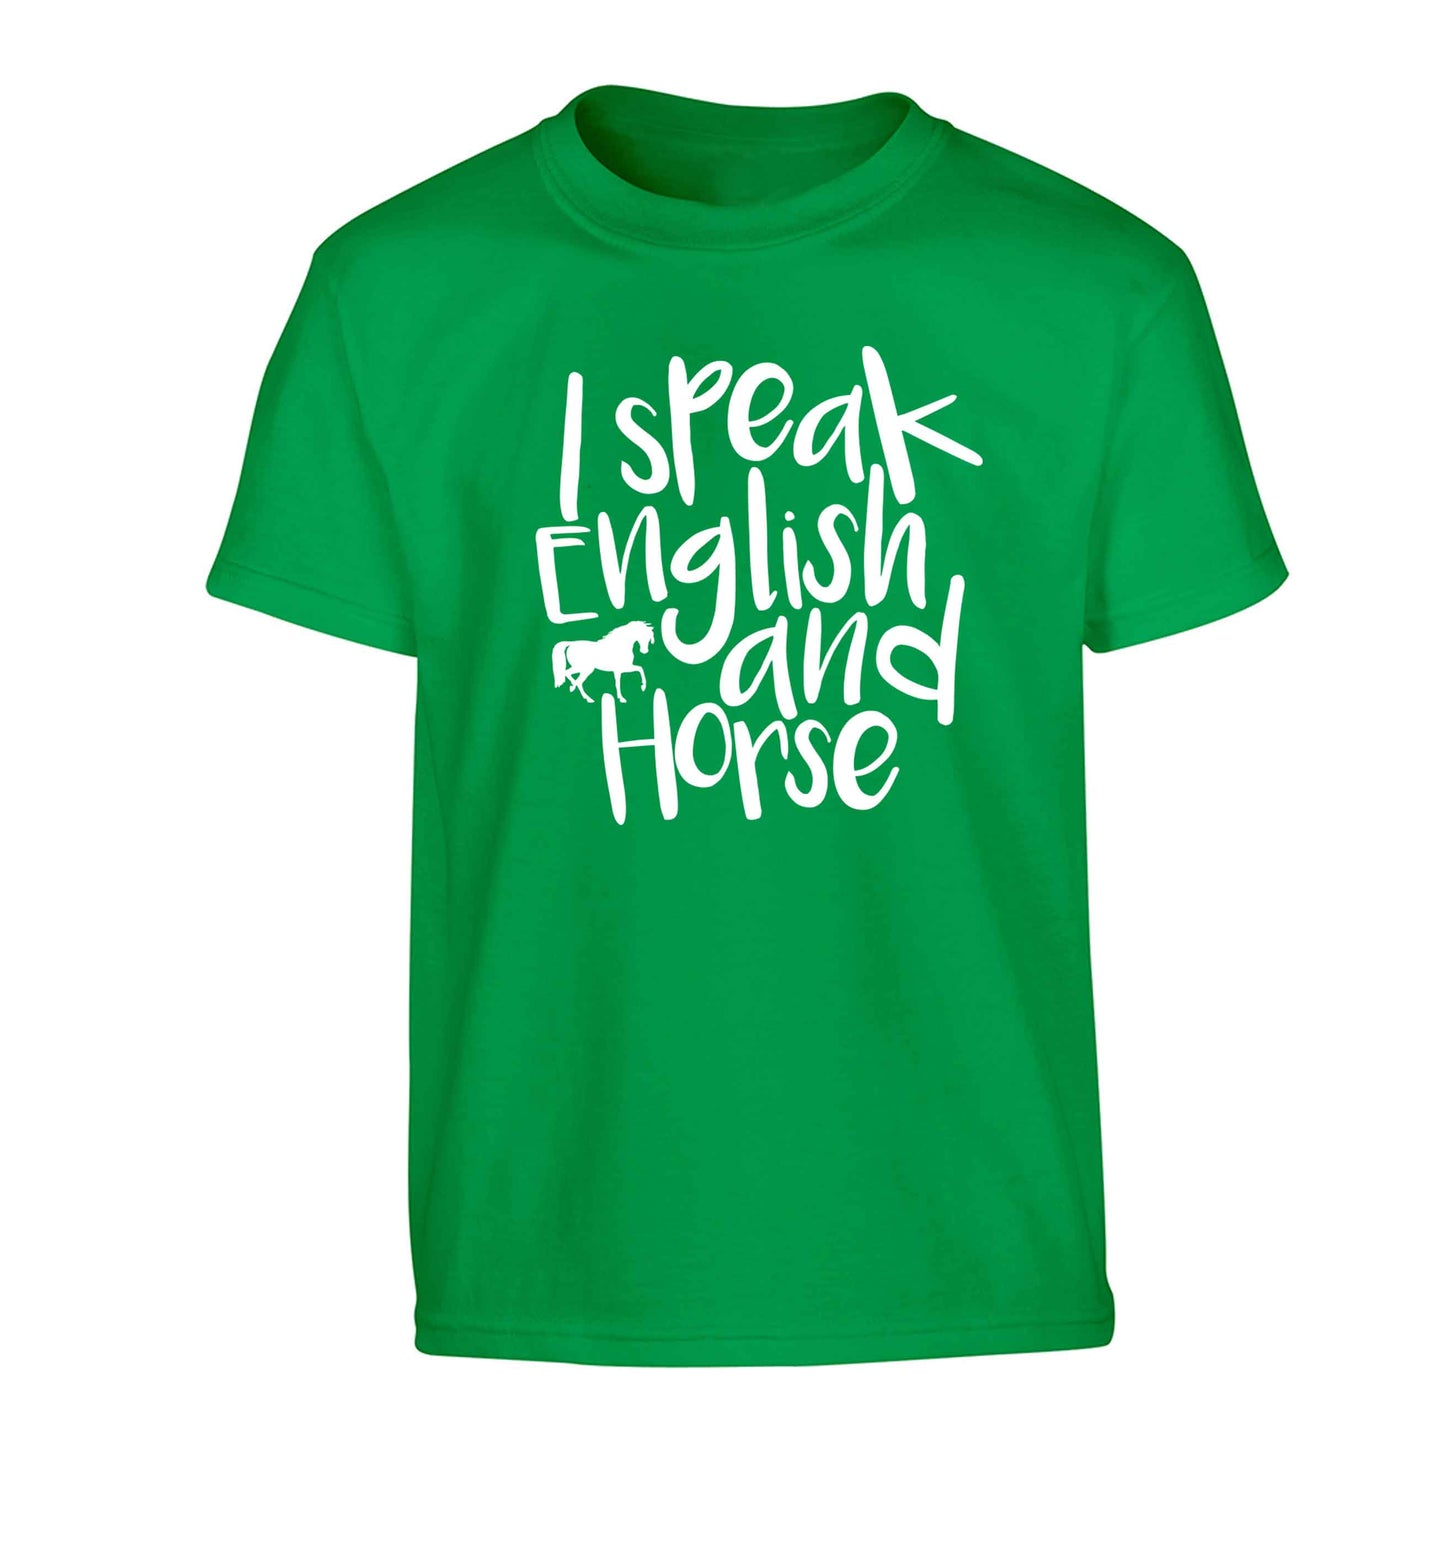 I speak English and horse Children's green Tshirt 12-13 Years